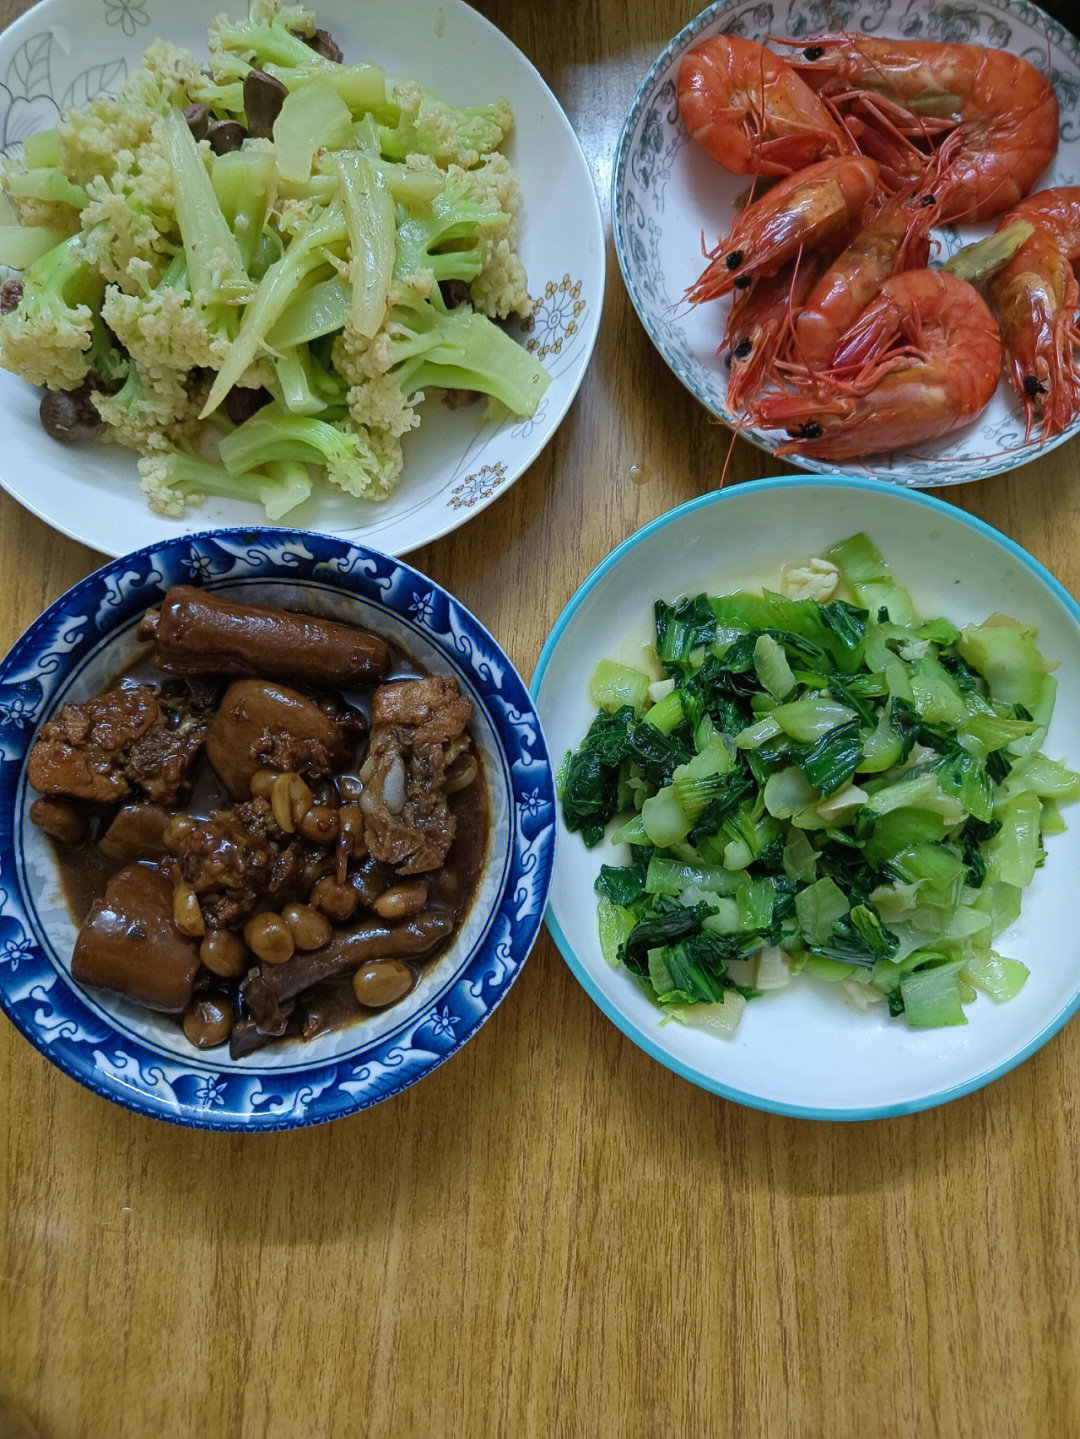 丽芝士 龙眼 菠萝 大肠血午餐:花菜炒鸡心 上海青 虾 猪尾巴 玉米笋